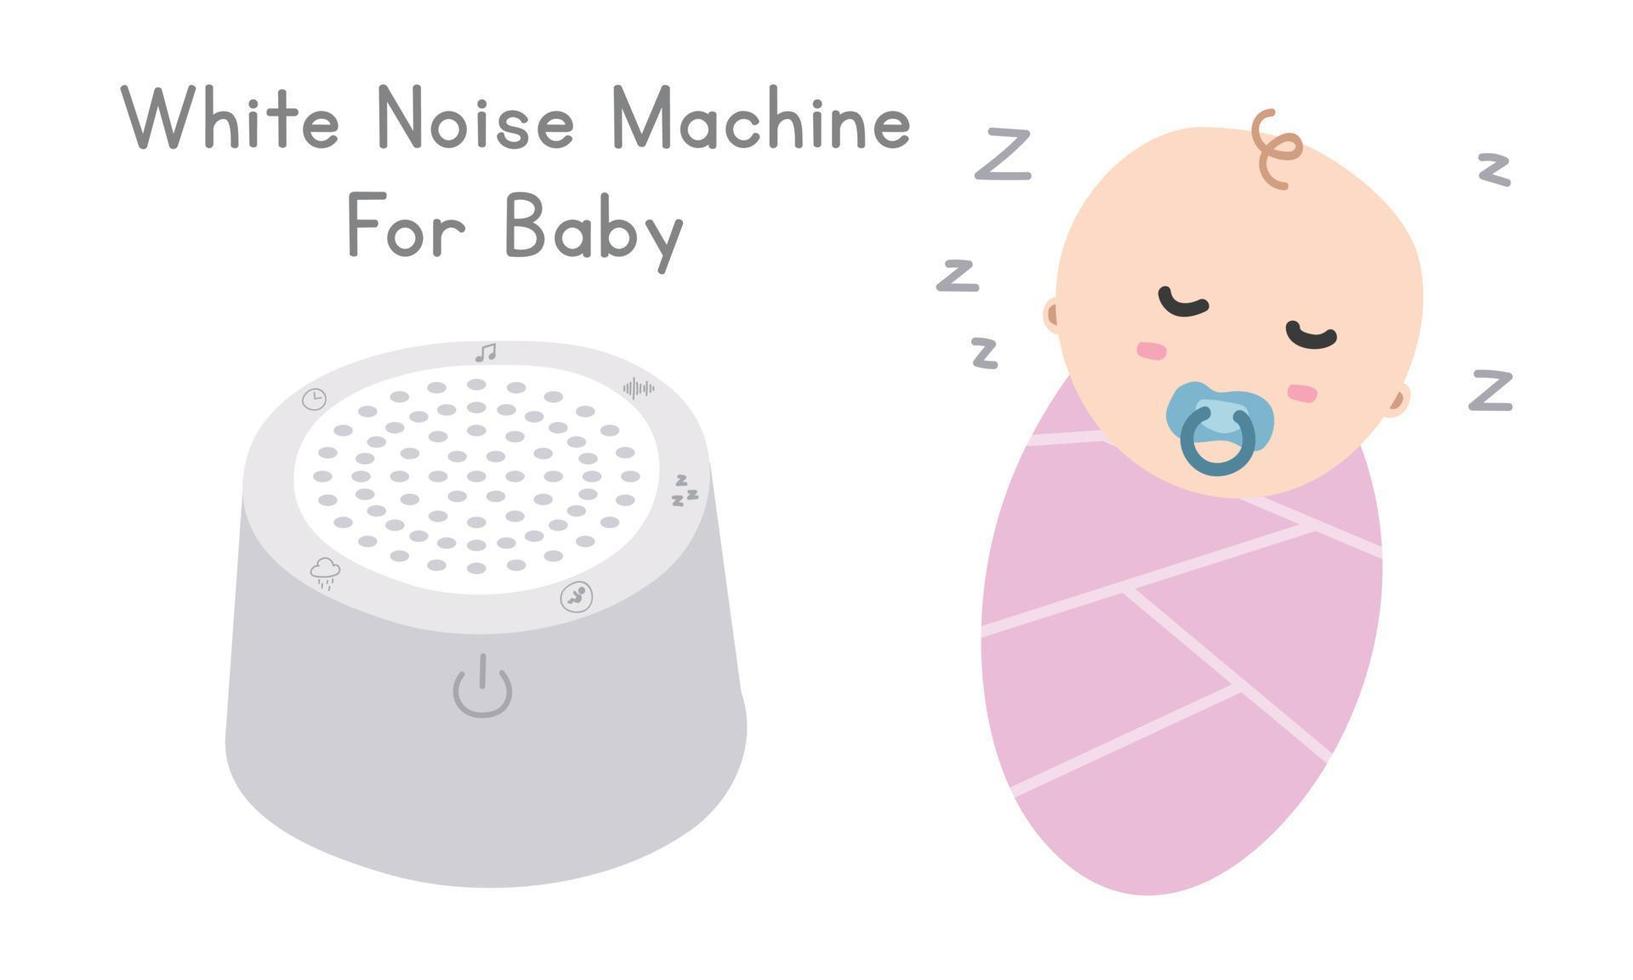 Baby White Noise Machine Clipart. White Noise Maker Maschine und flache Vektorillustration des schlafenden Babys. Schlaflieder mit weißem Rauschen für Neugeborene im Cartoon-Stil. babyparty, neugeborenes kinderzimmerkonzept vektor